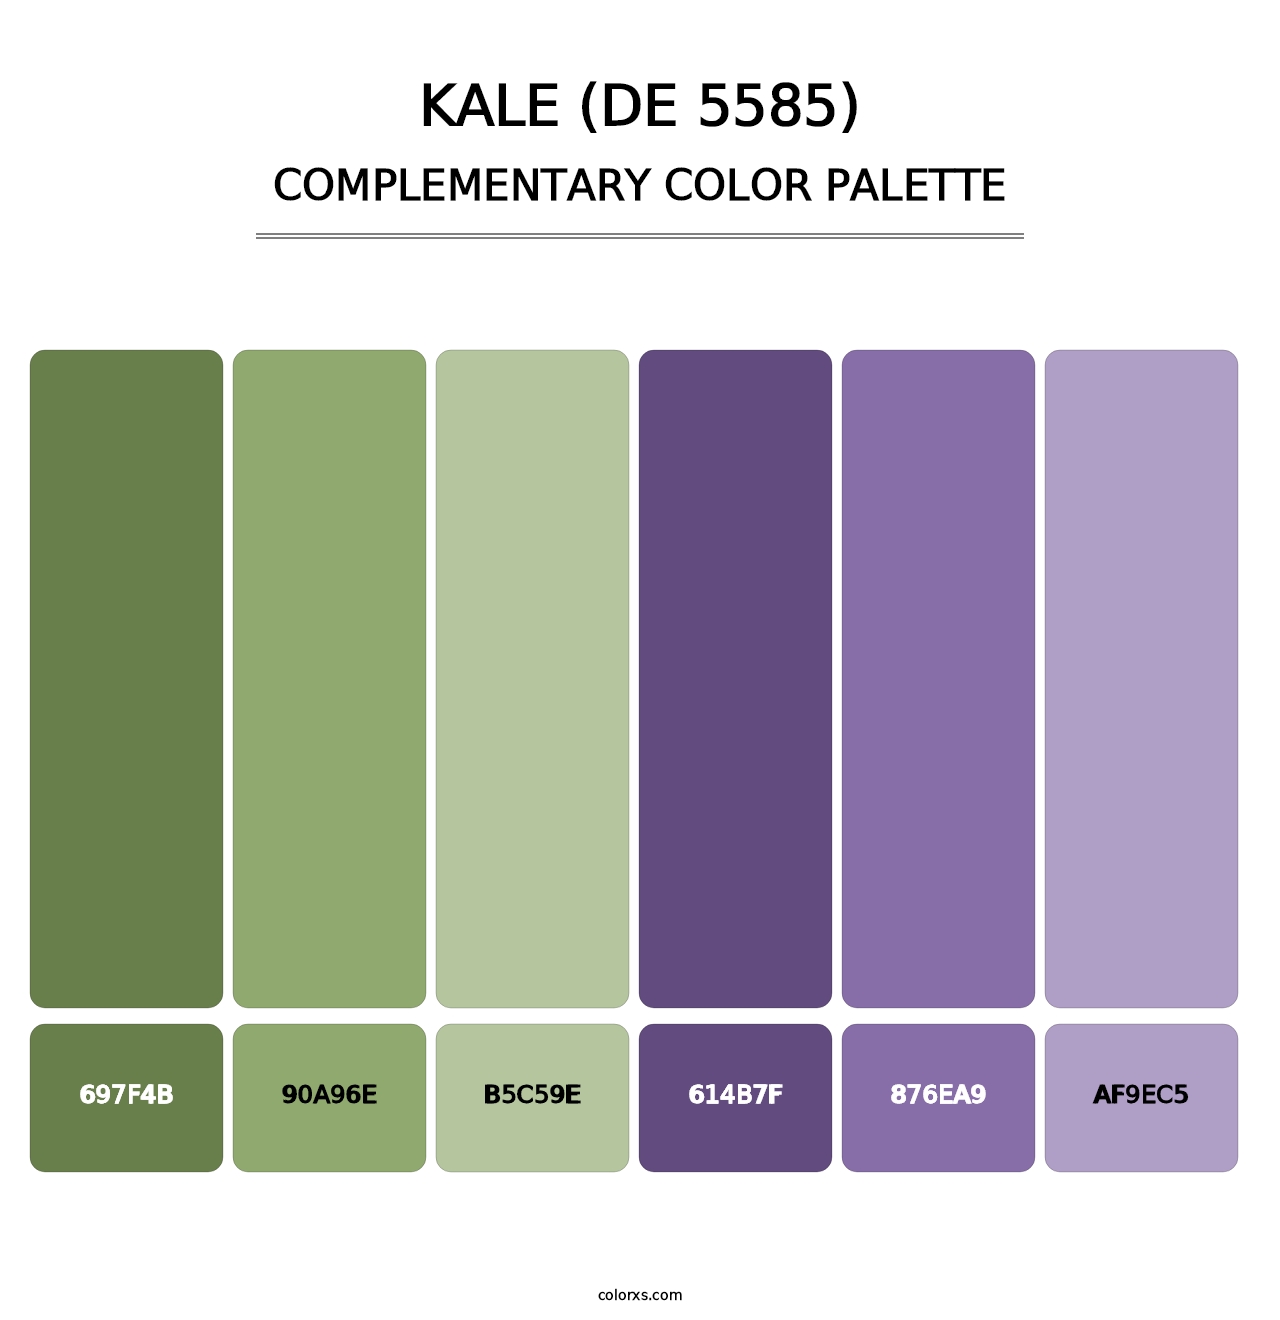 Kale (DE 5585) - Complementary Color Palette